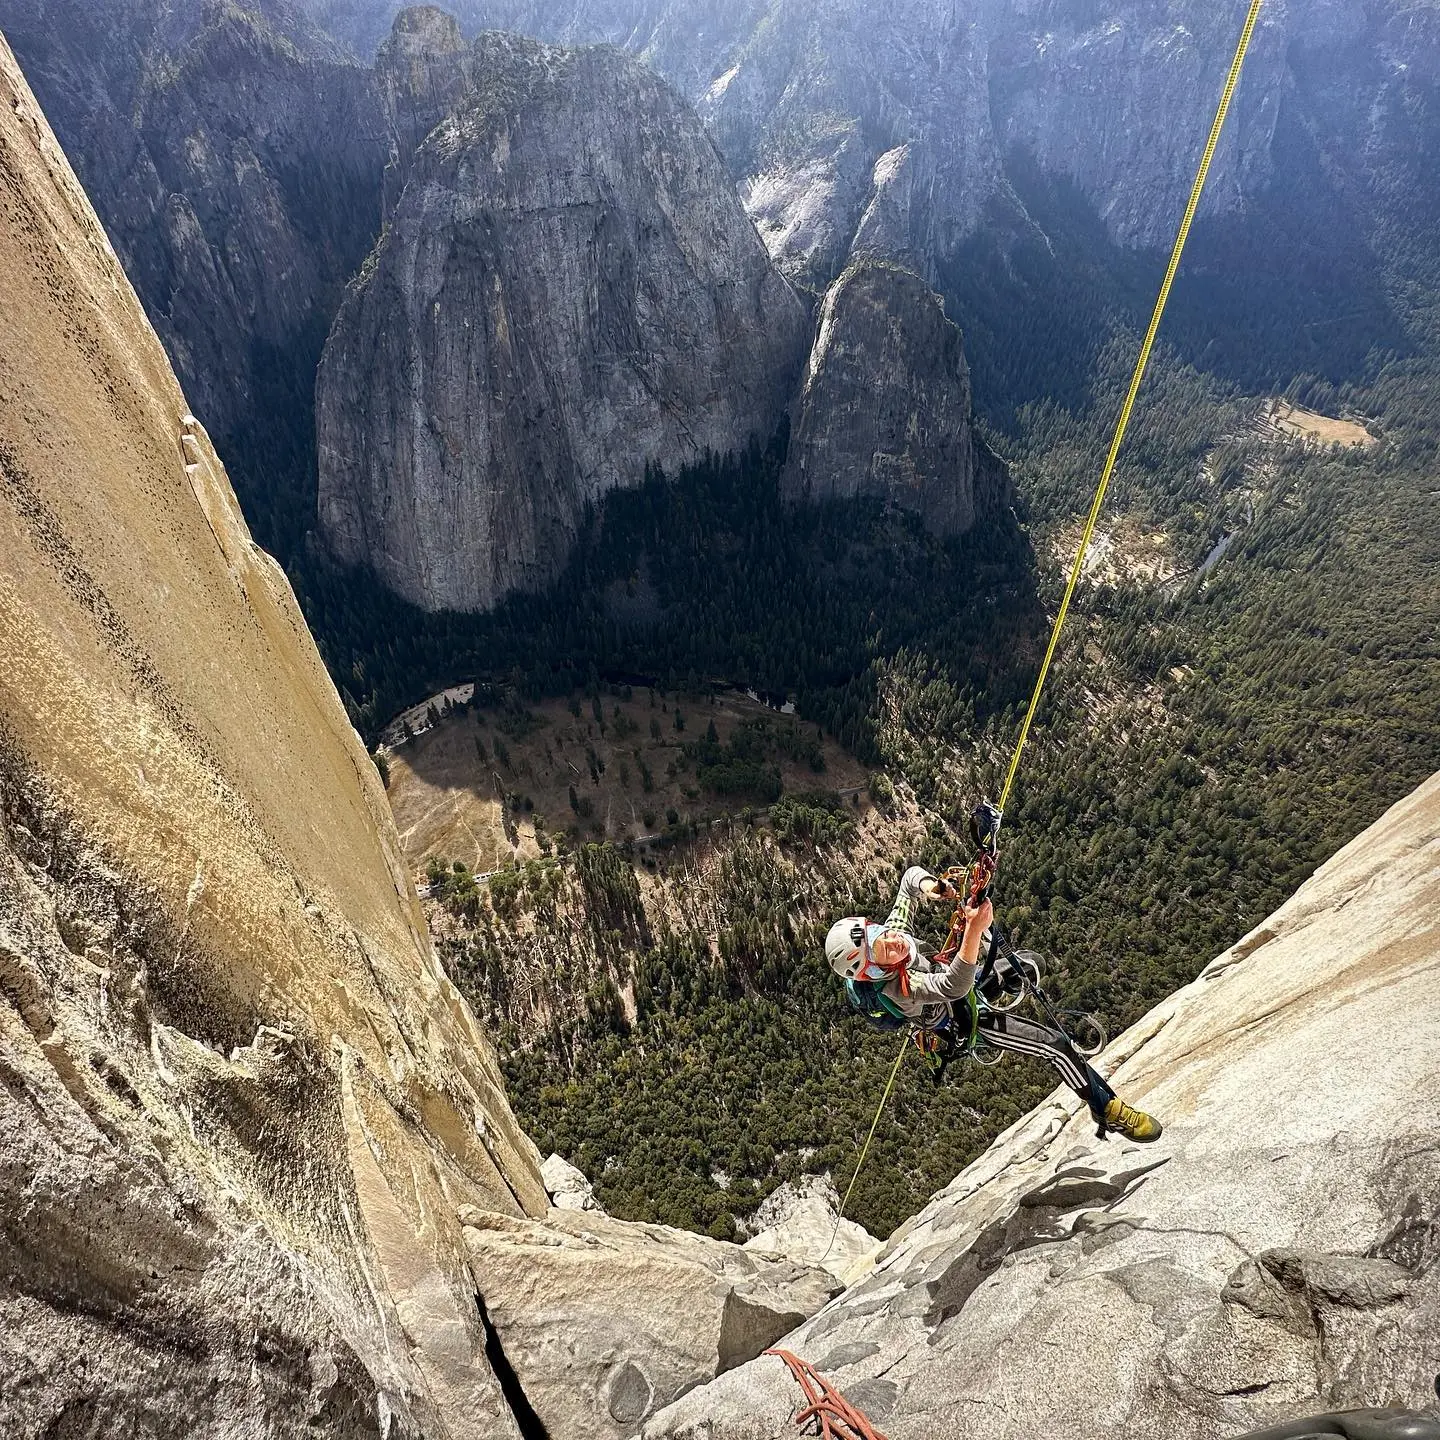 Сем Бейкер (Sam Baker) став наймолодшою ​​людиною, яка завершила сходження на скелю Ель-Капітан (El Capitan). Фото Joe Baker